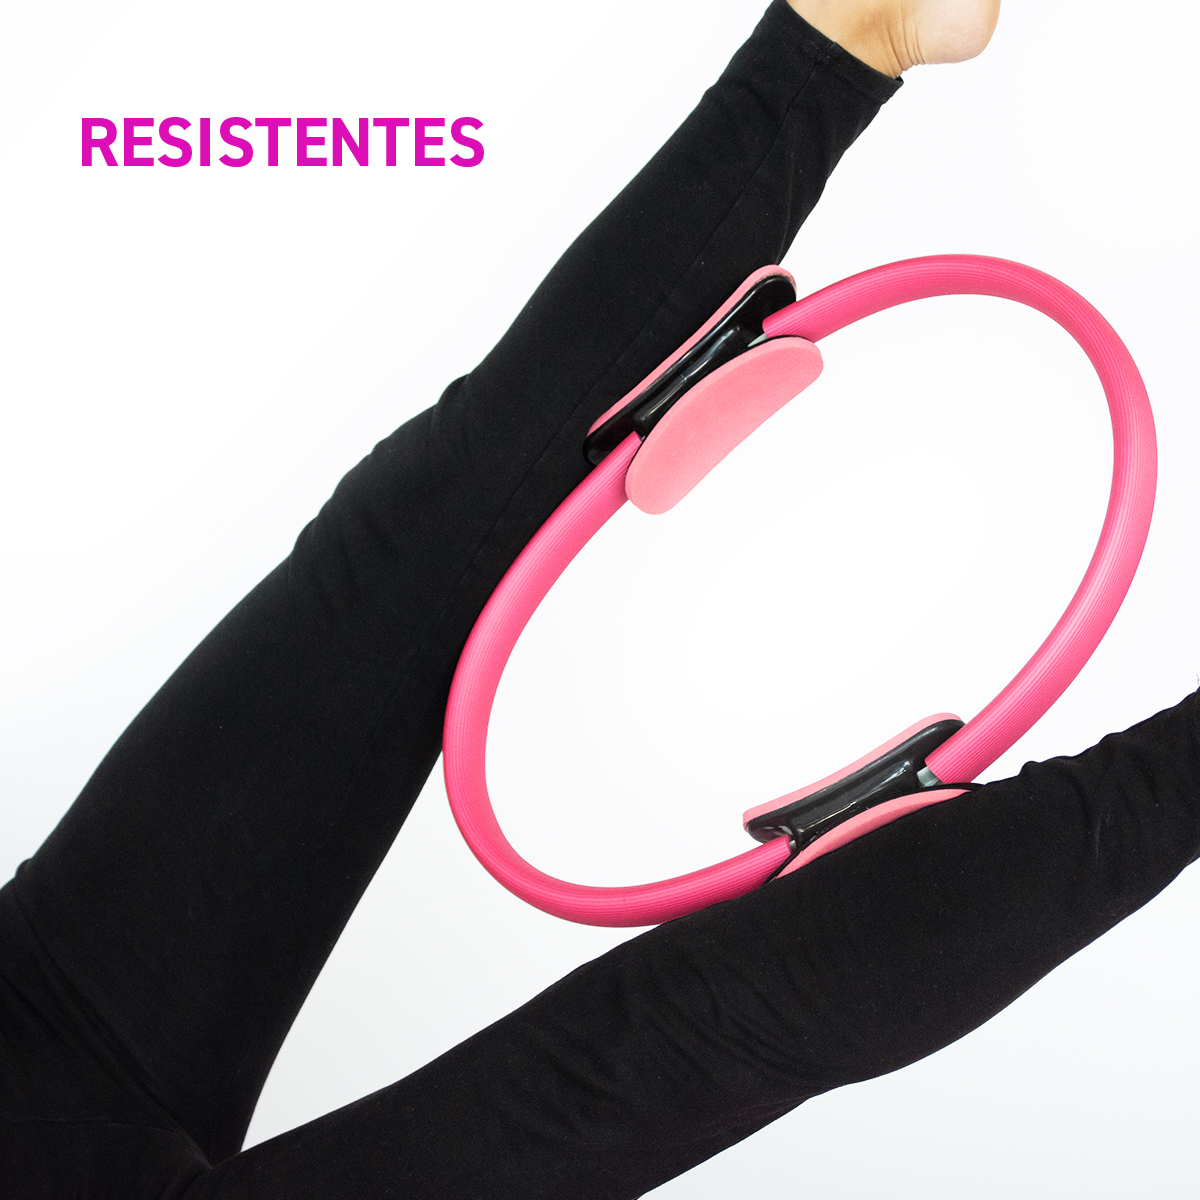 Aro de Resistencia para Yoga, Pilates y Fitness color Morado